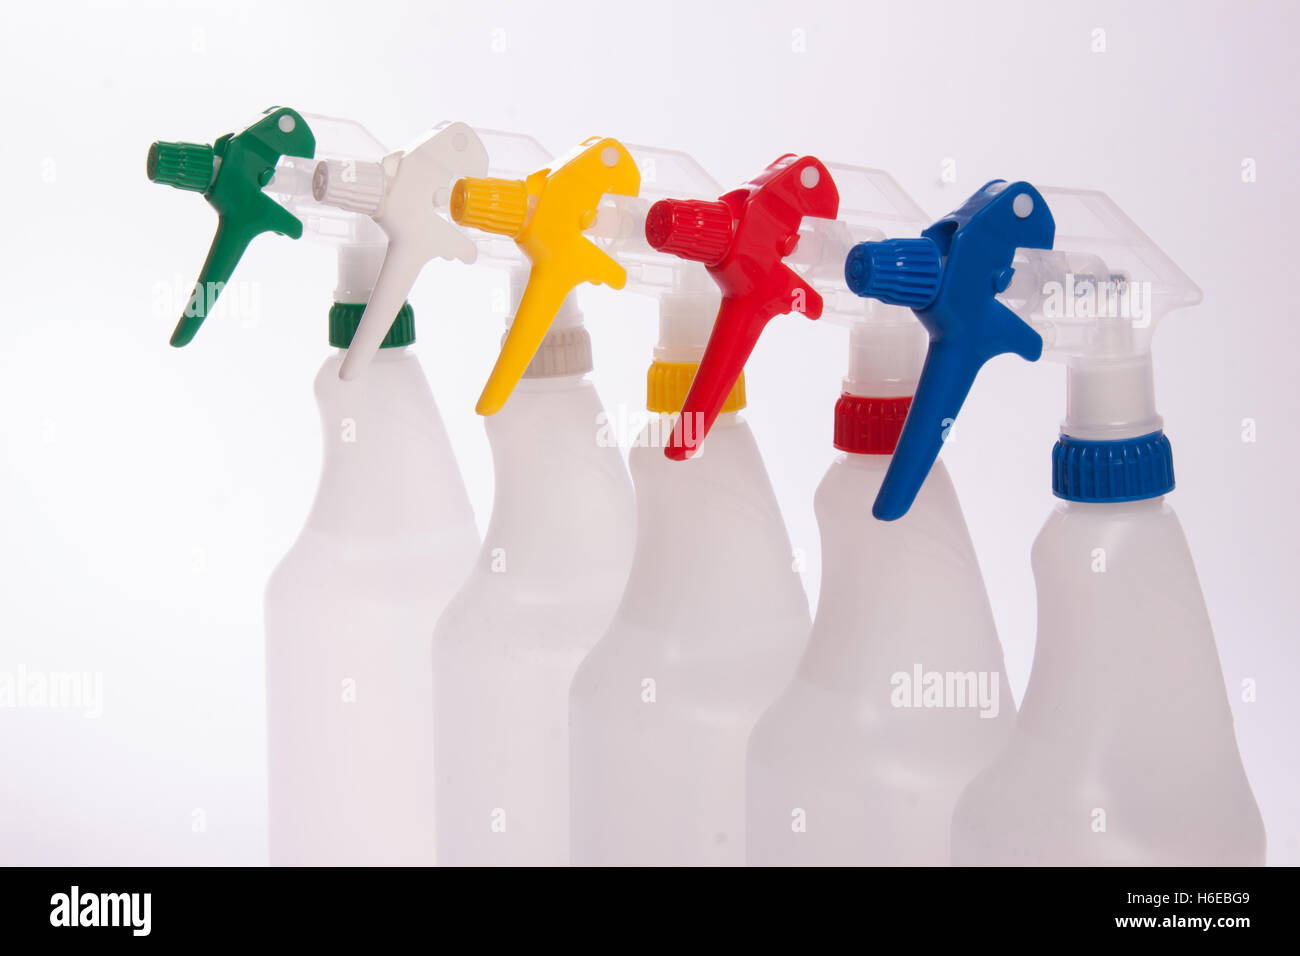 Auslösen von Sprühflaschen, Hand-held-Sprayer in grün weiß gelb rot und blau Stockfoto